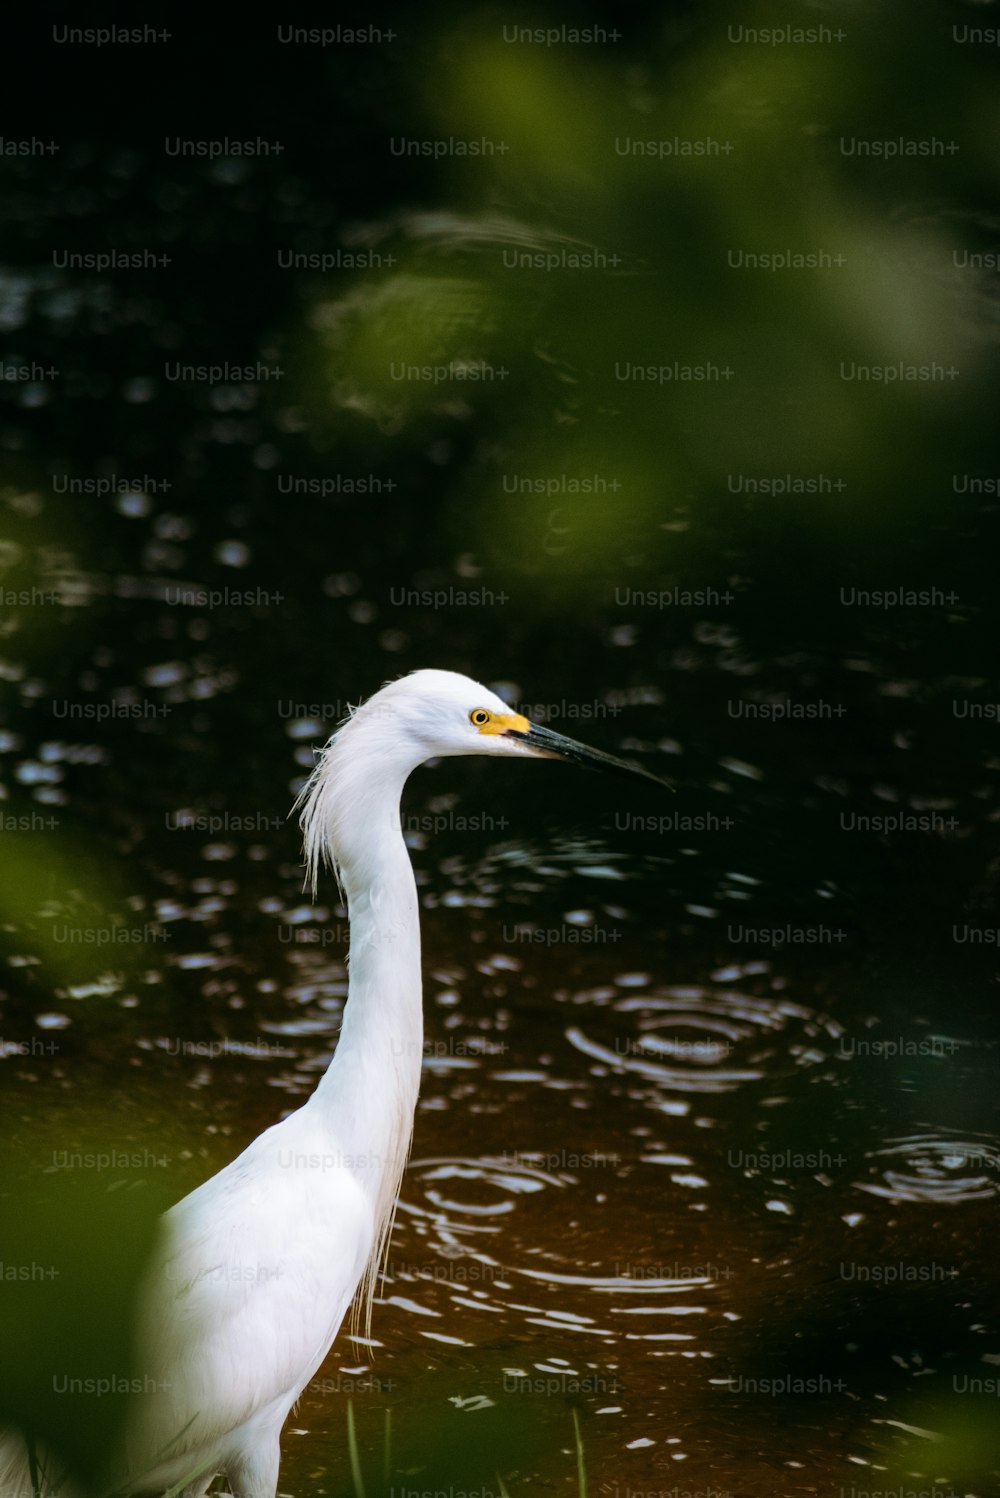 하얀 새가 물 속에 서 있다